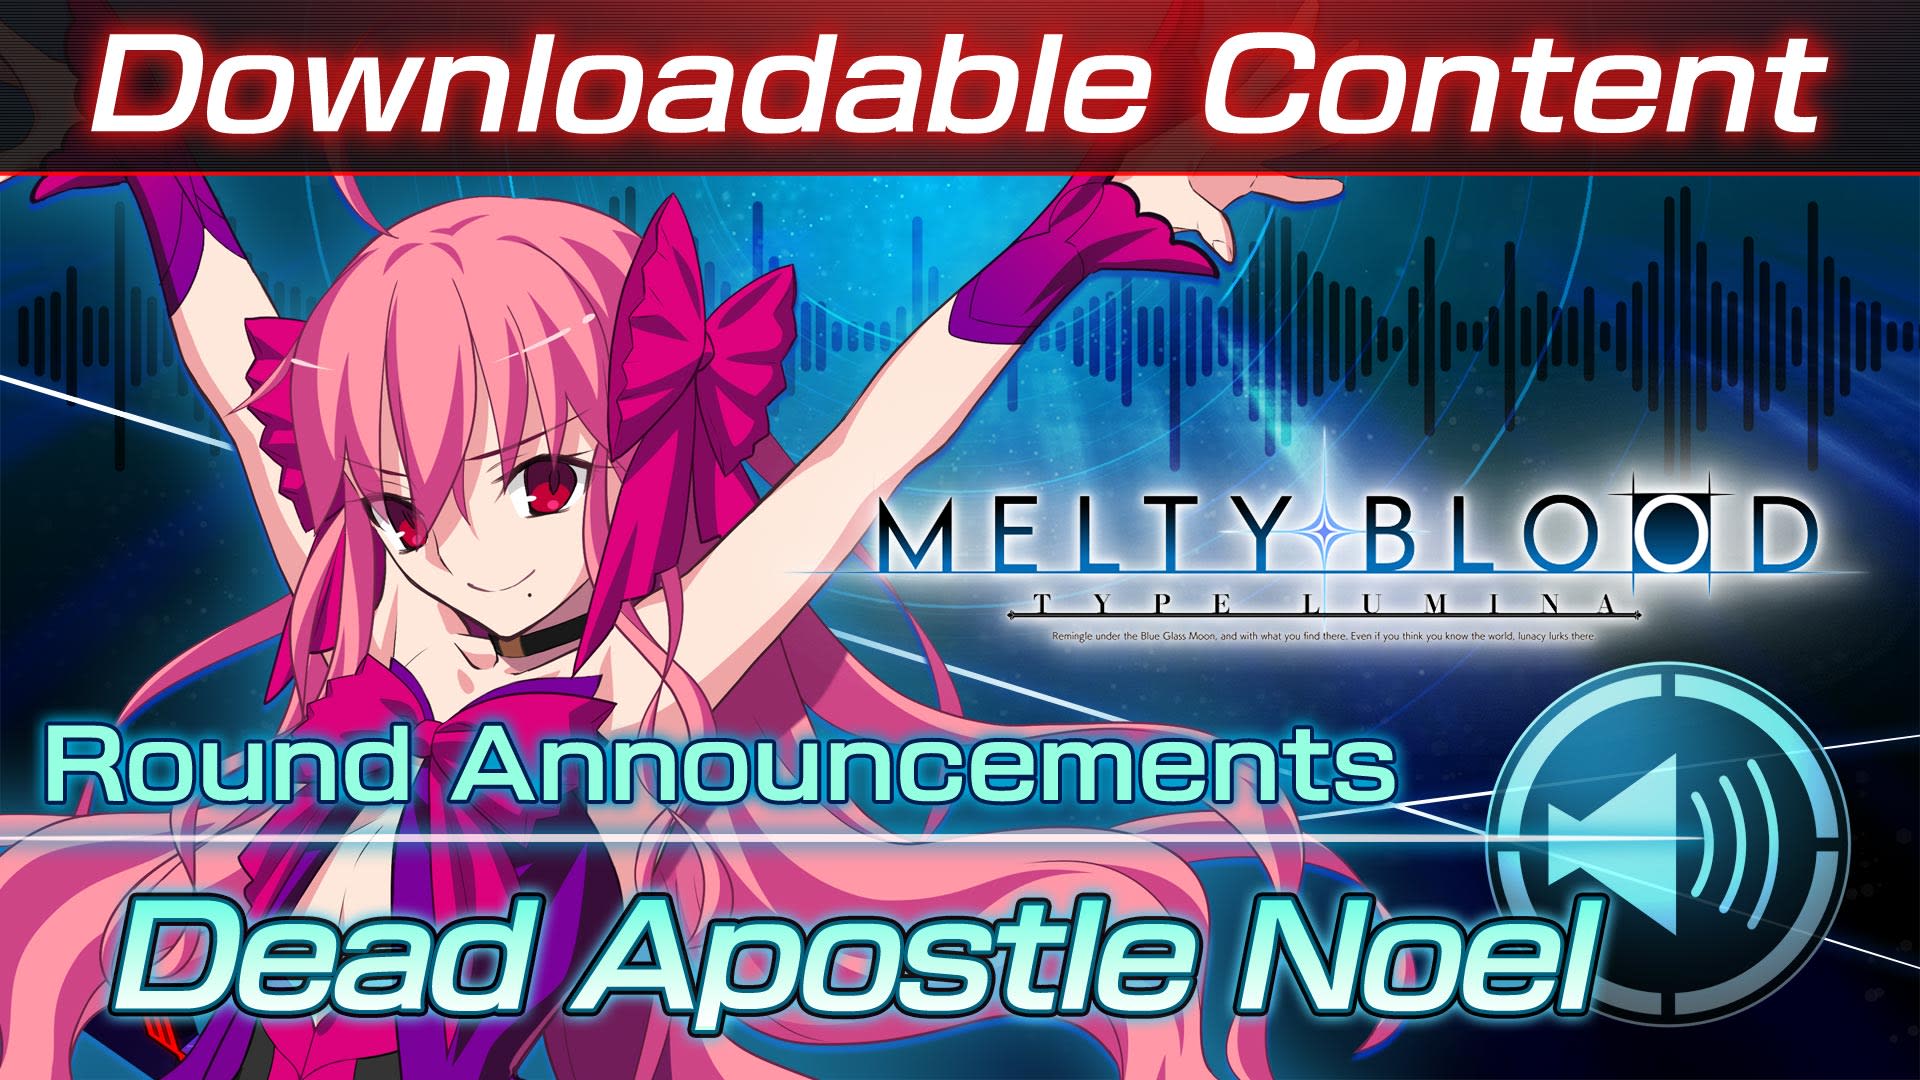 DLC: Dead Apostle Noel Round Announcements